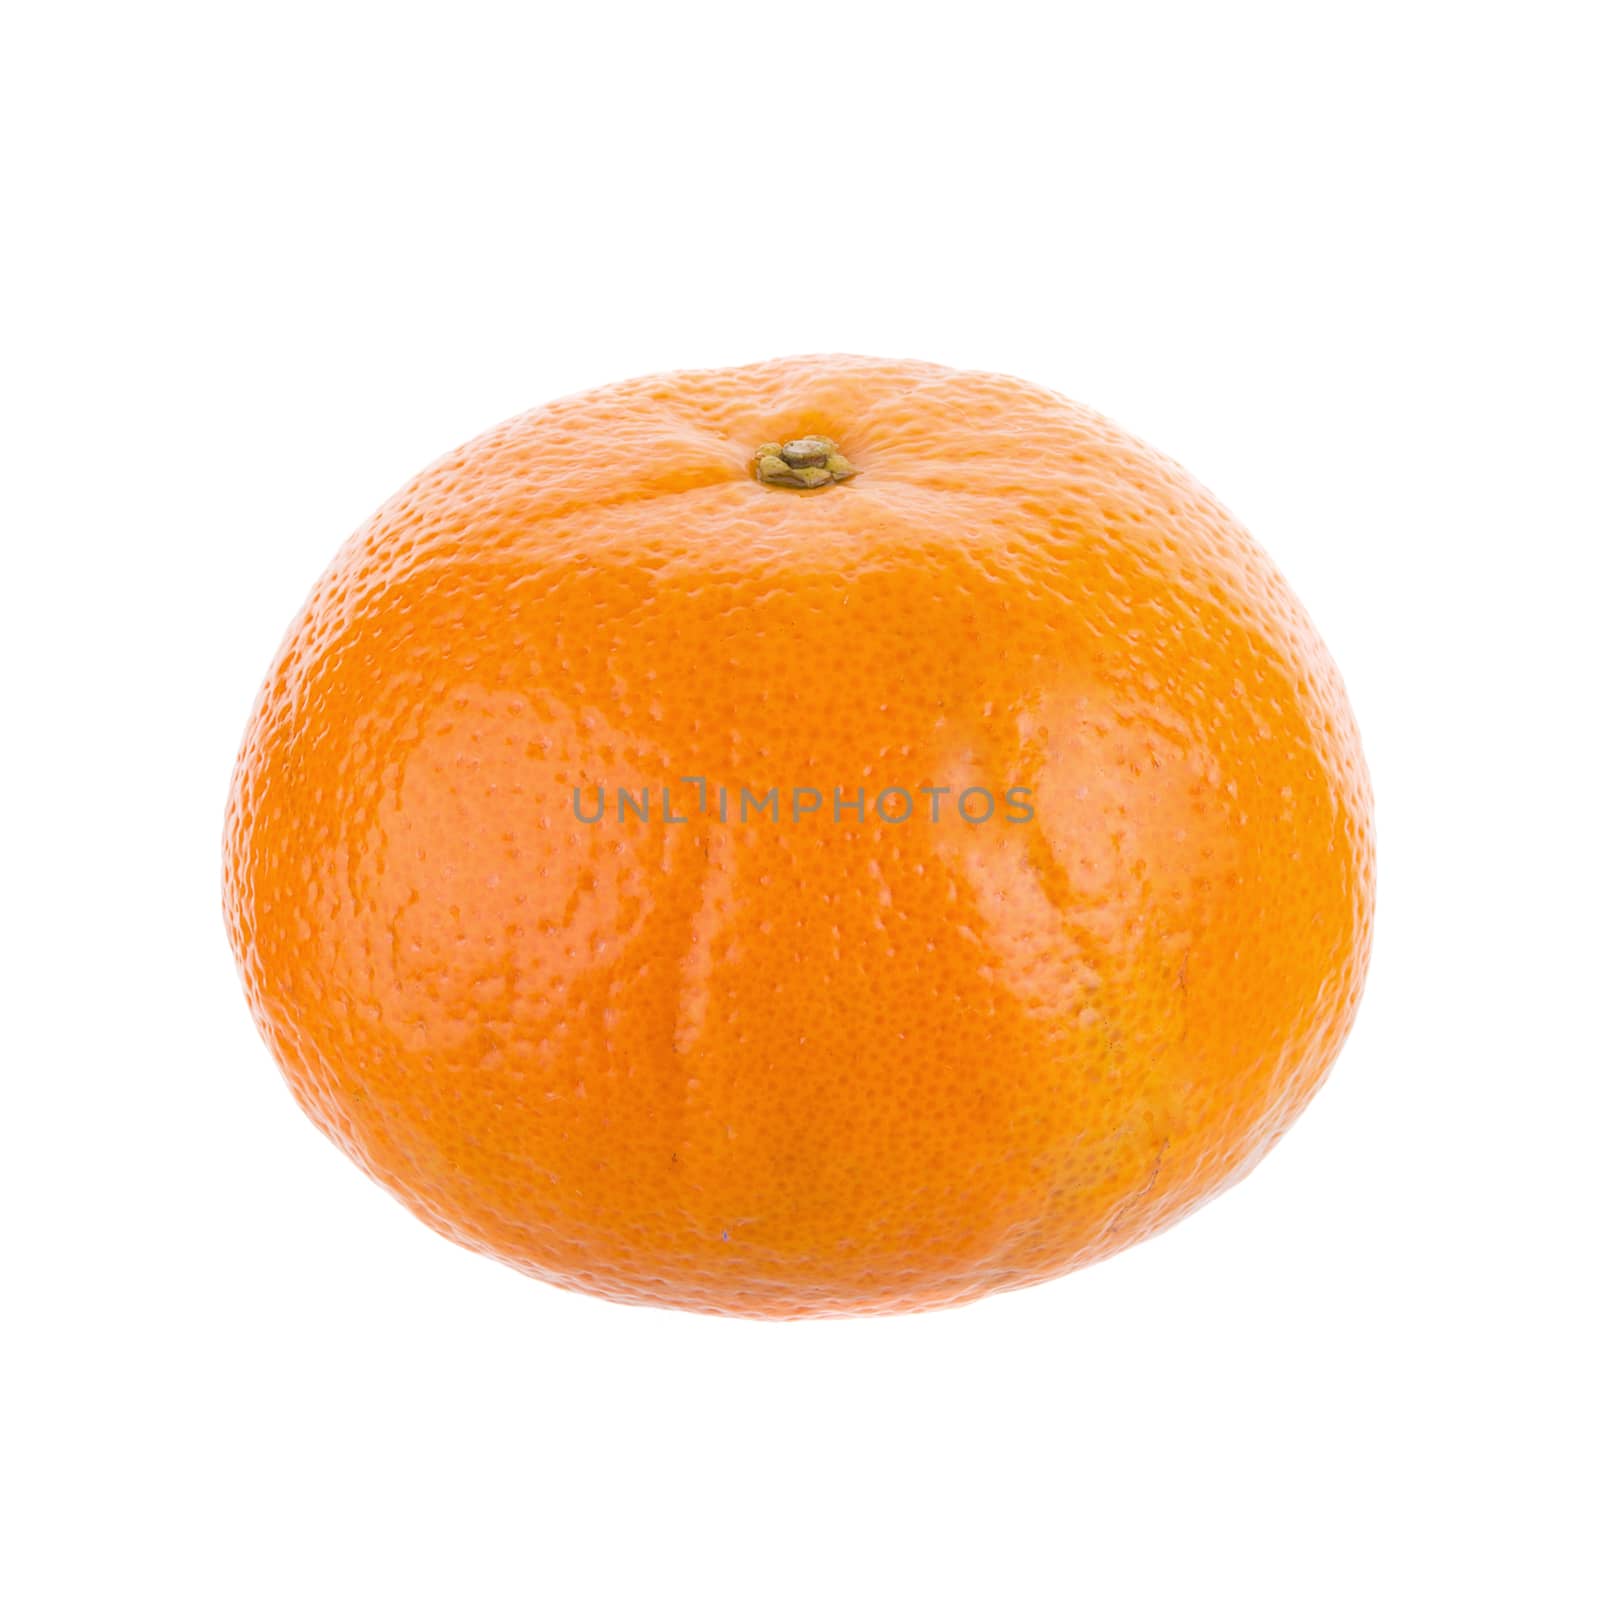 fresh orange fruit isolated on white background by kaiskynet